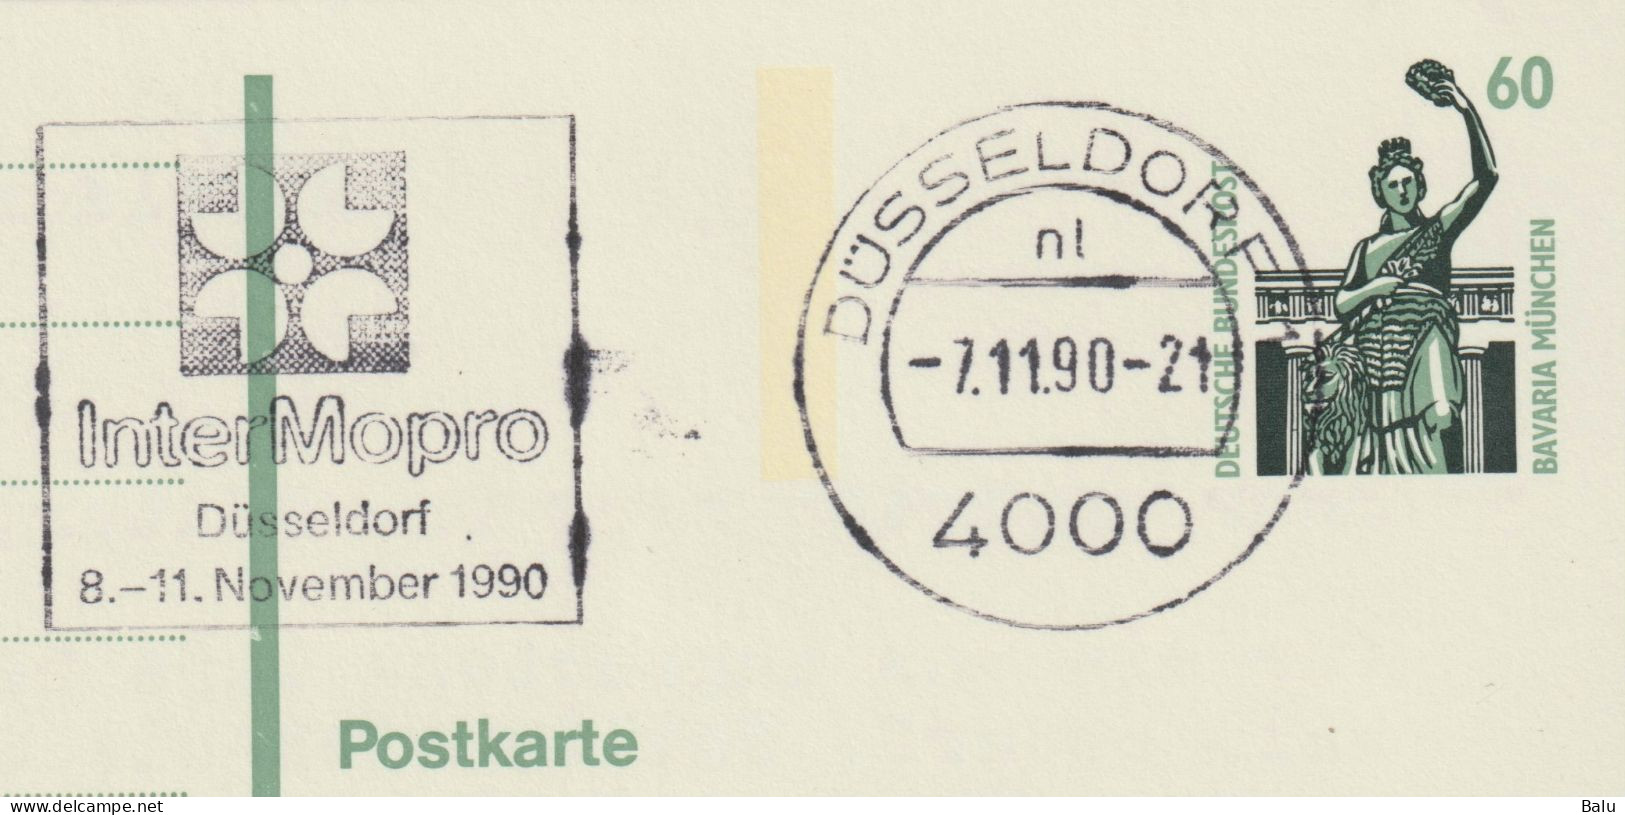 Ganzsache Postkarte 60 Pfg. Michel P144, InterMopro Düsseldorf 7.11.90, Siehe 2 Scans - Privatumschläge - Gebraucht